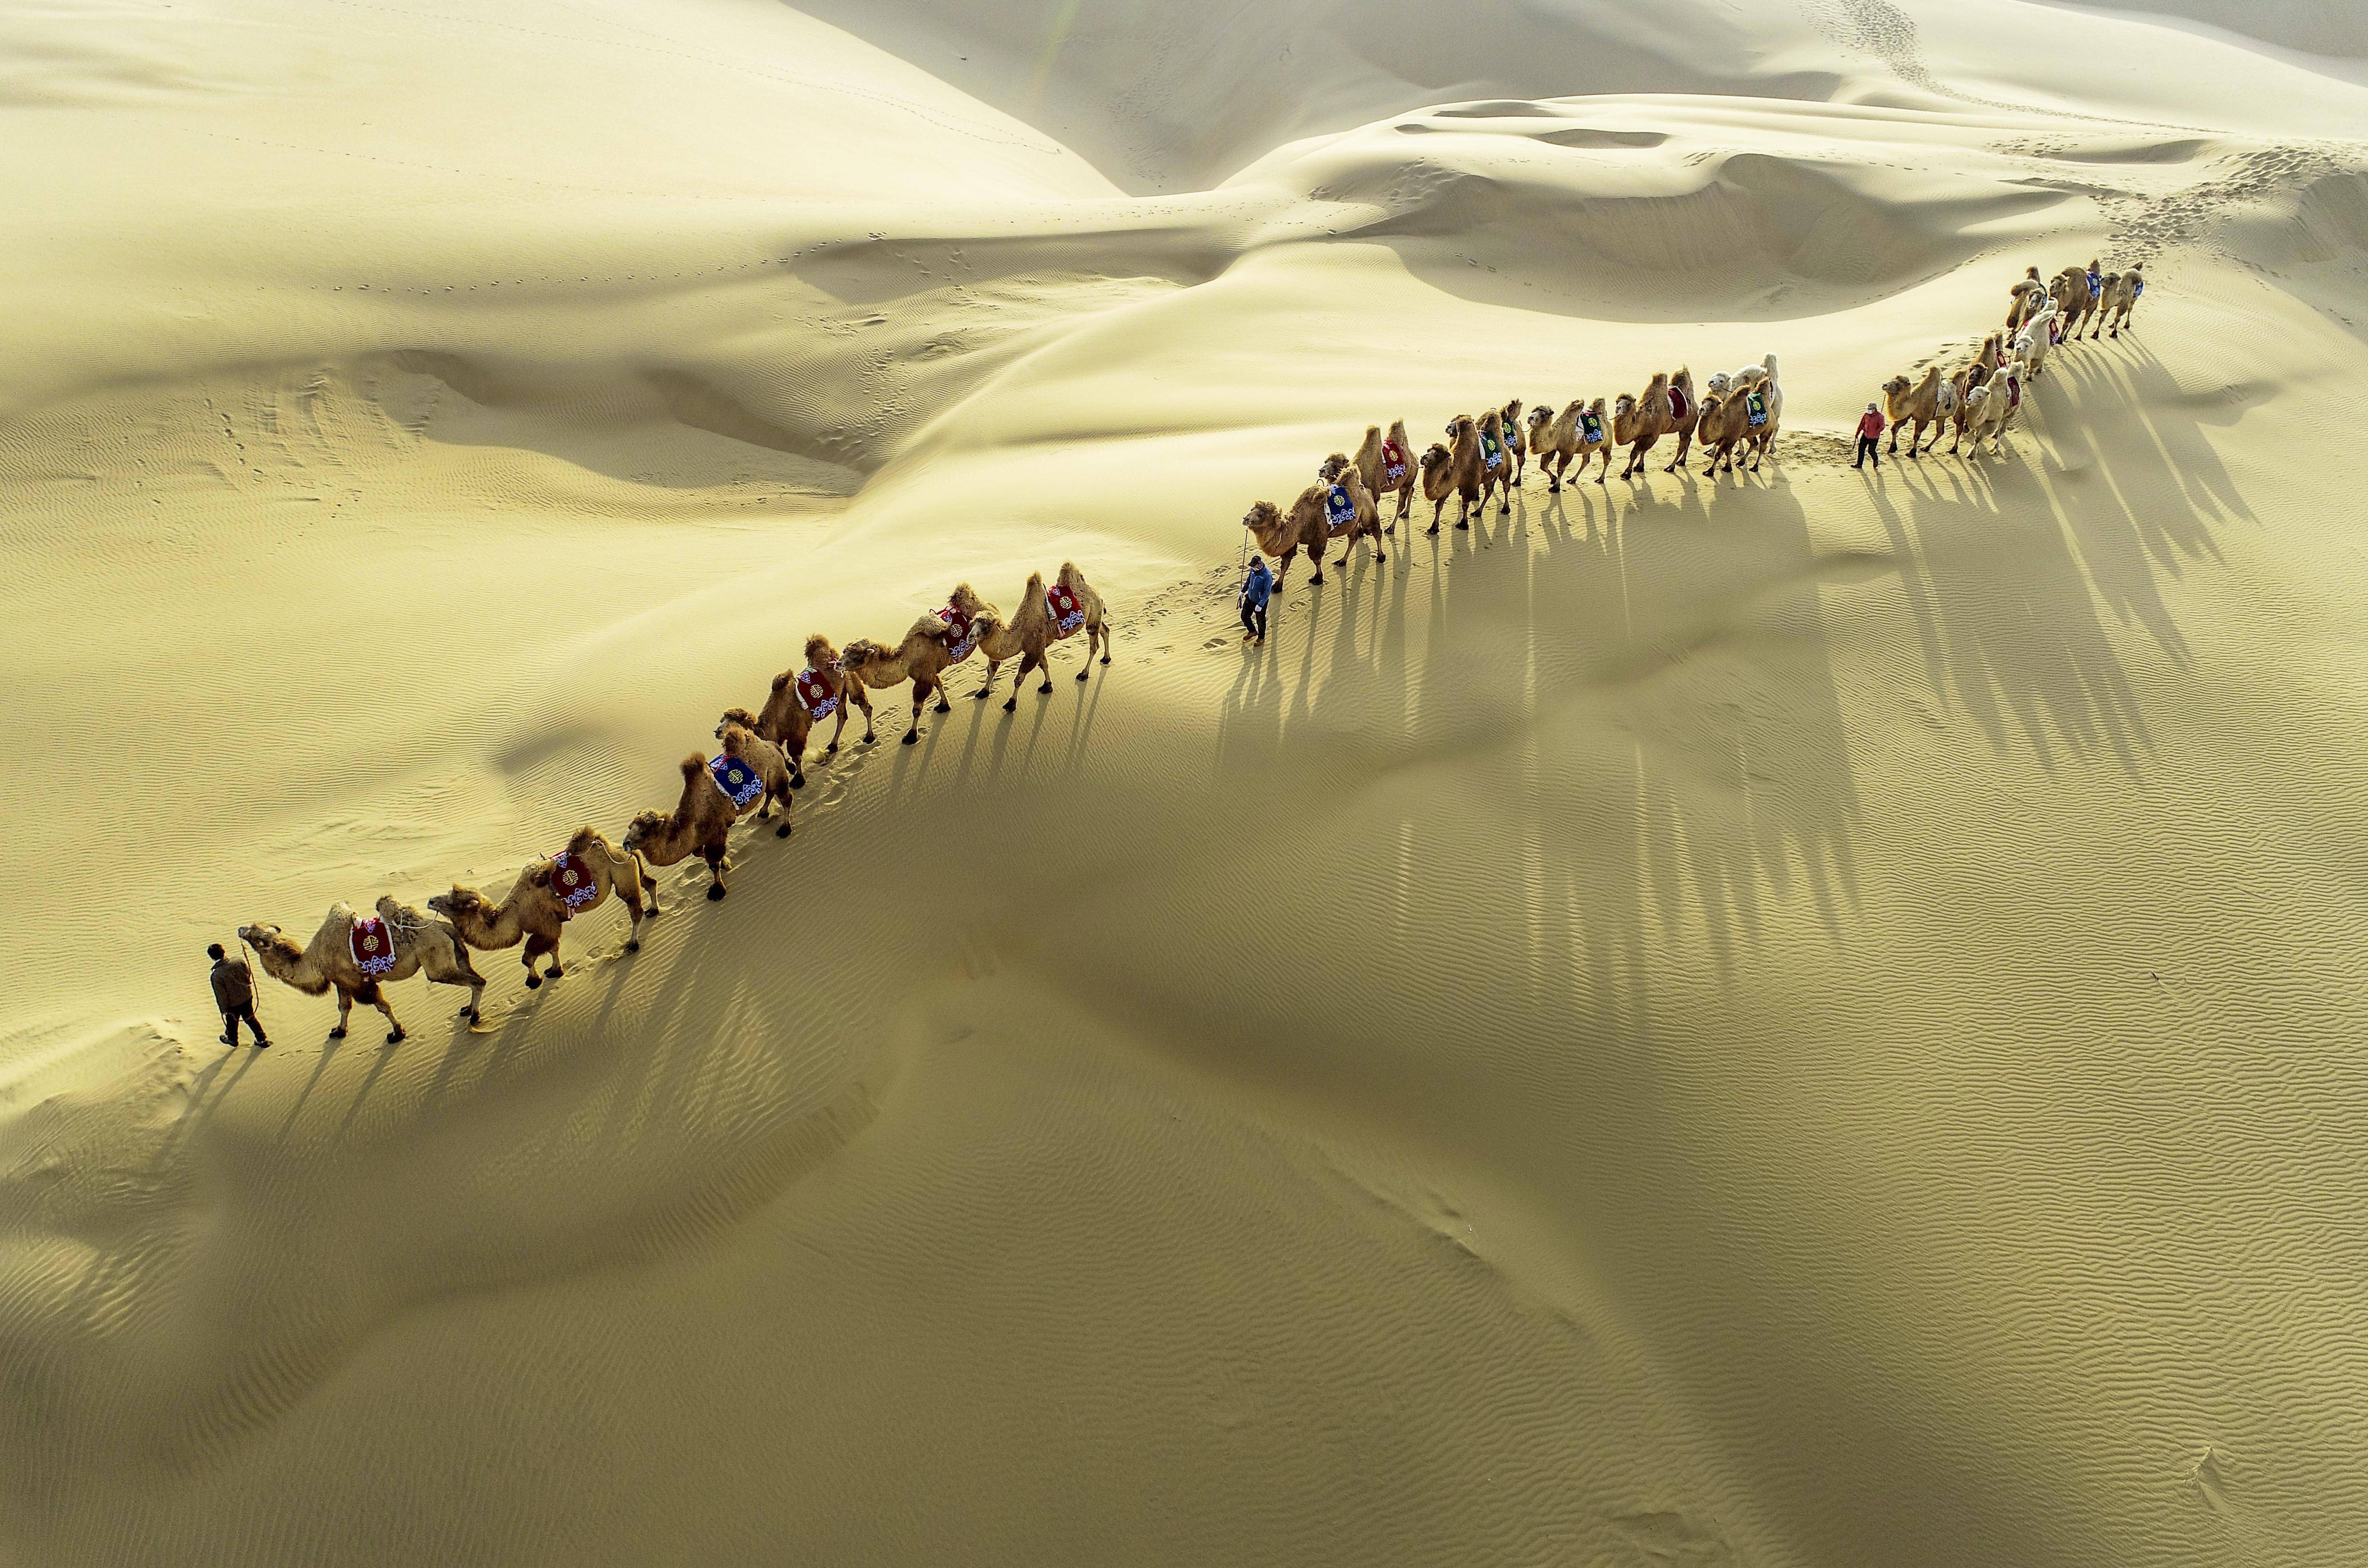 沙漠驼队高清壁纸图片